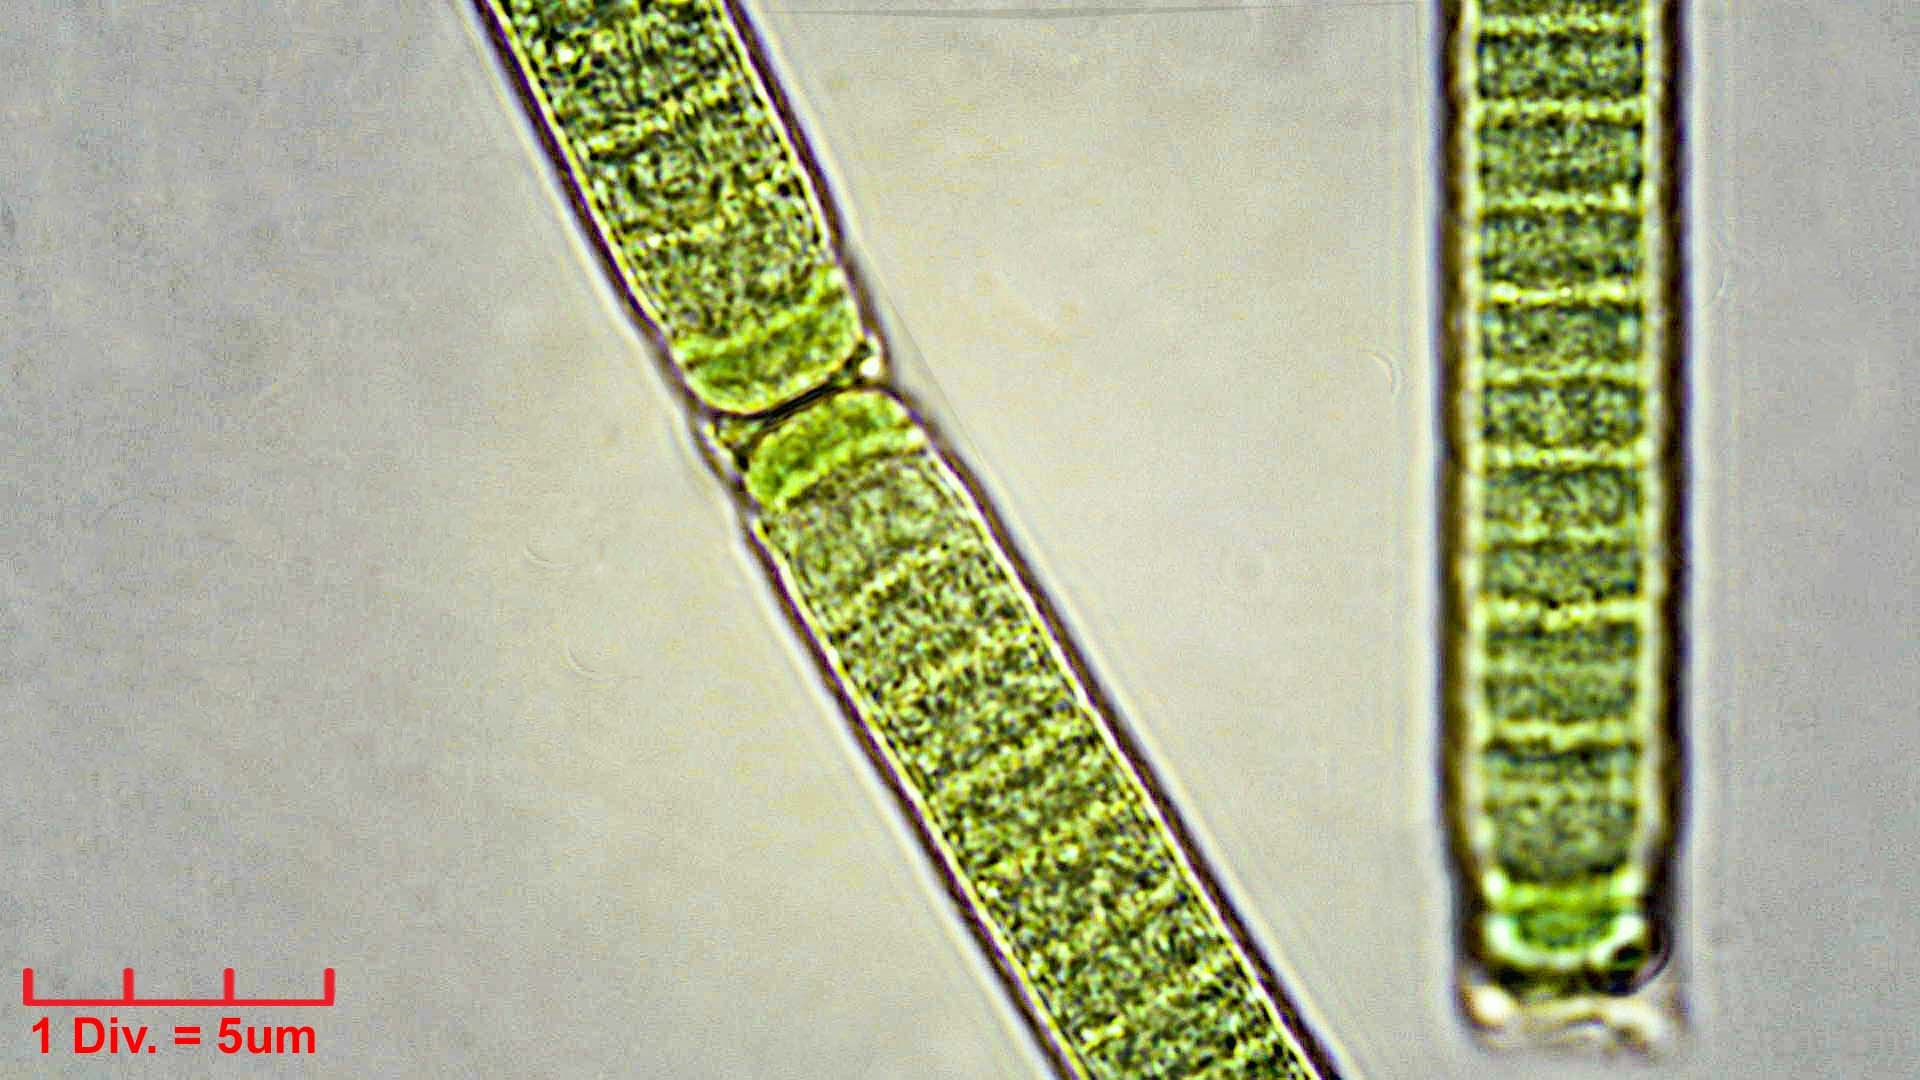 ./Cyanobacteria/Oscillatoriales/Oscillatoriaceae/Phormidium/irriguum/phormidium-irriguum-230.jpg